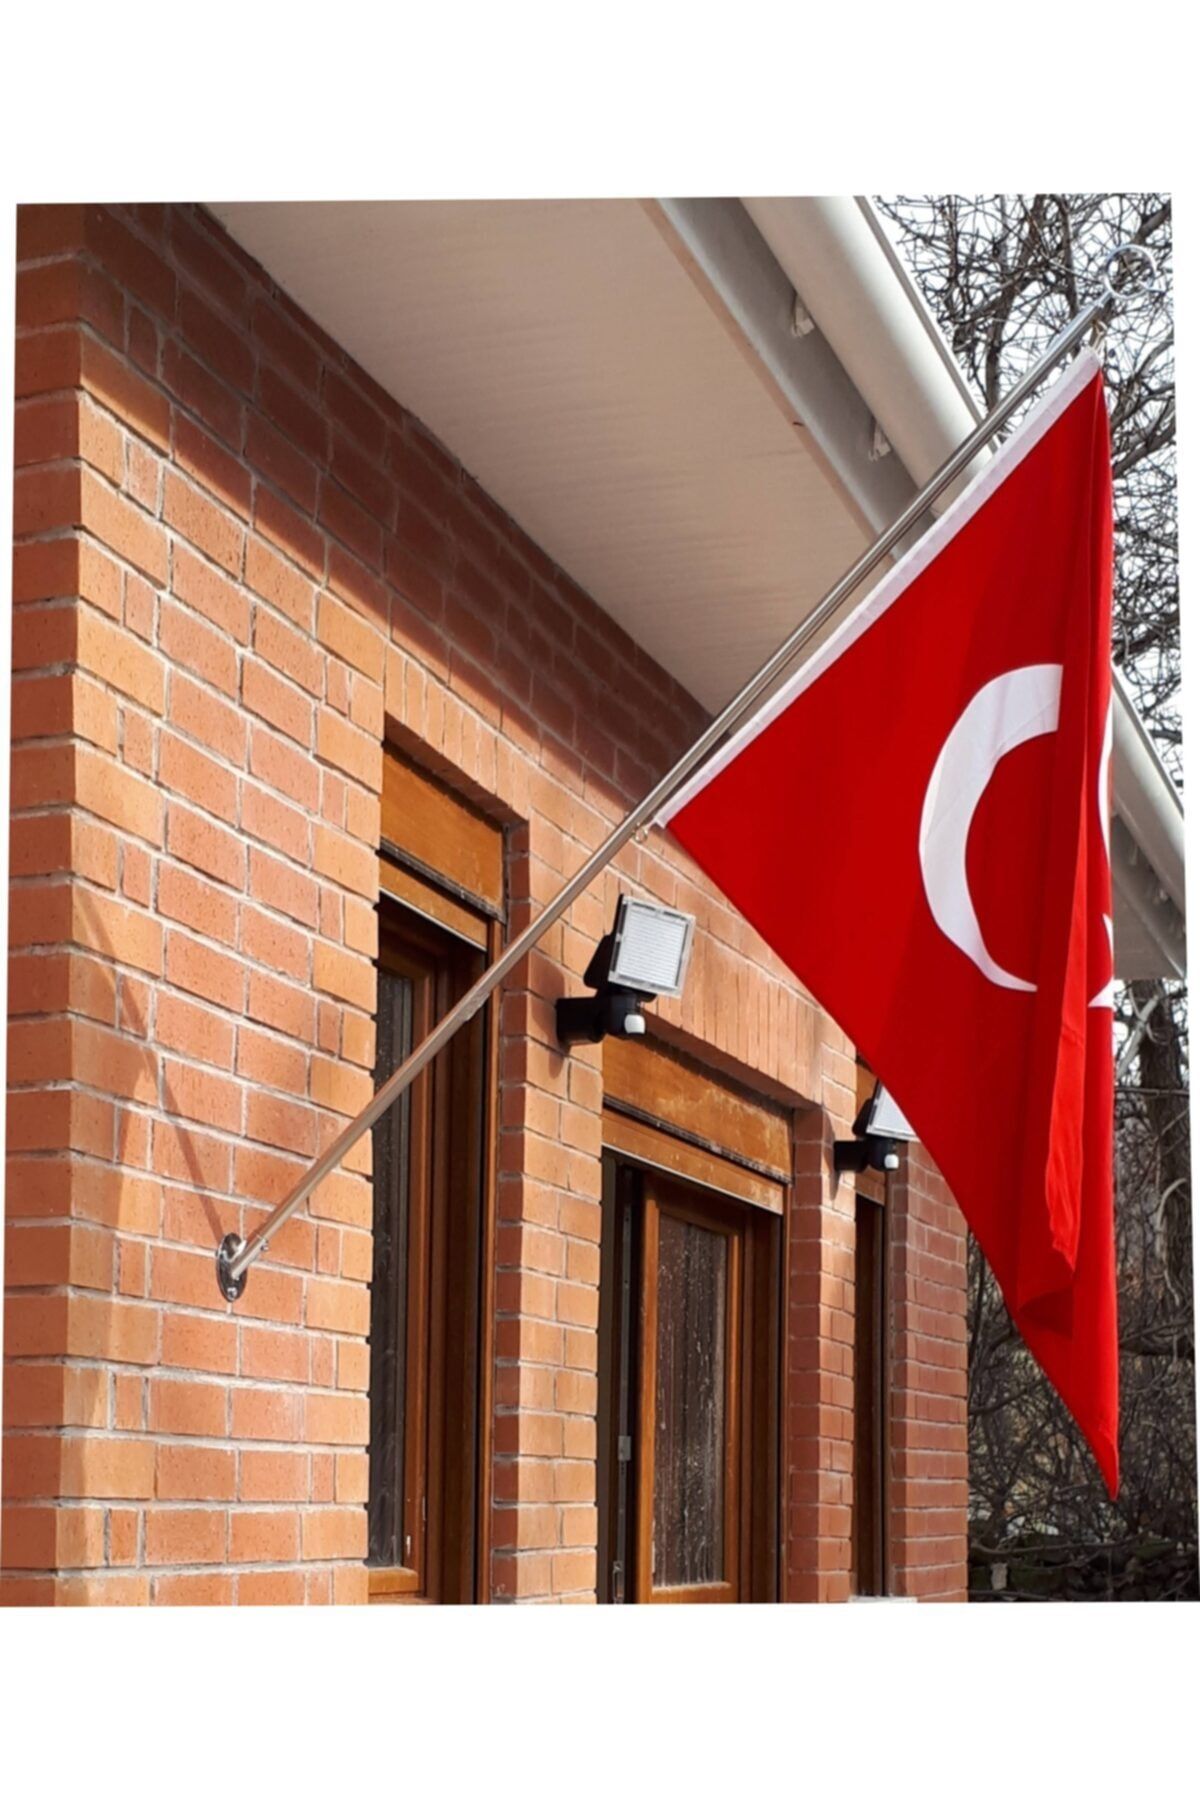 bayrakal  Direk, Bayrak Direği, Bina Cephe Direği, Türk Bayraklı, Paslanmaz